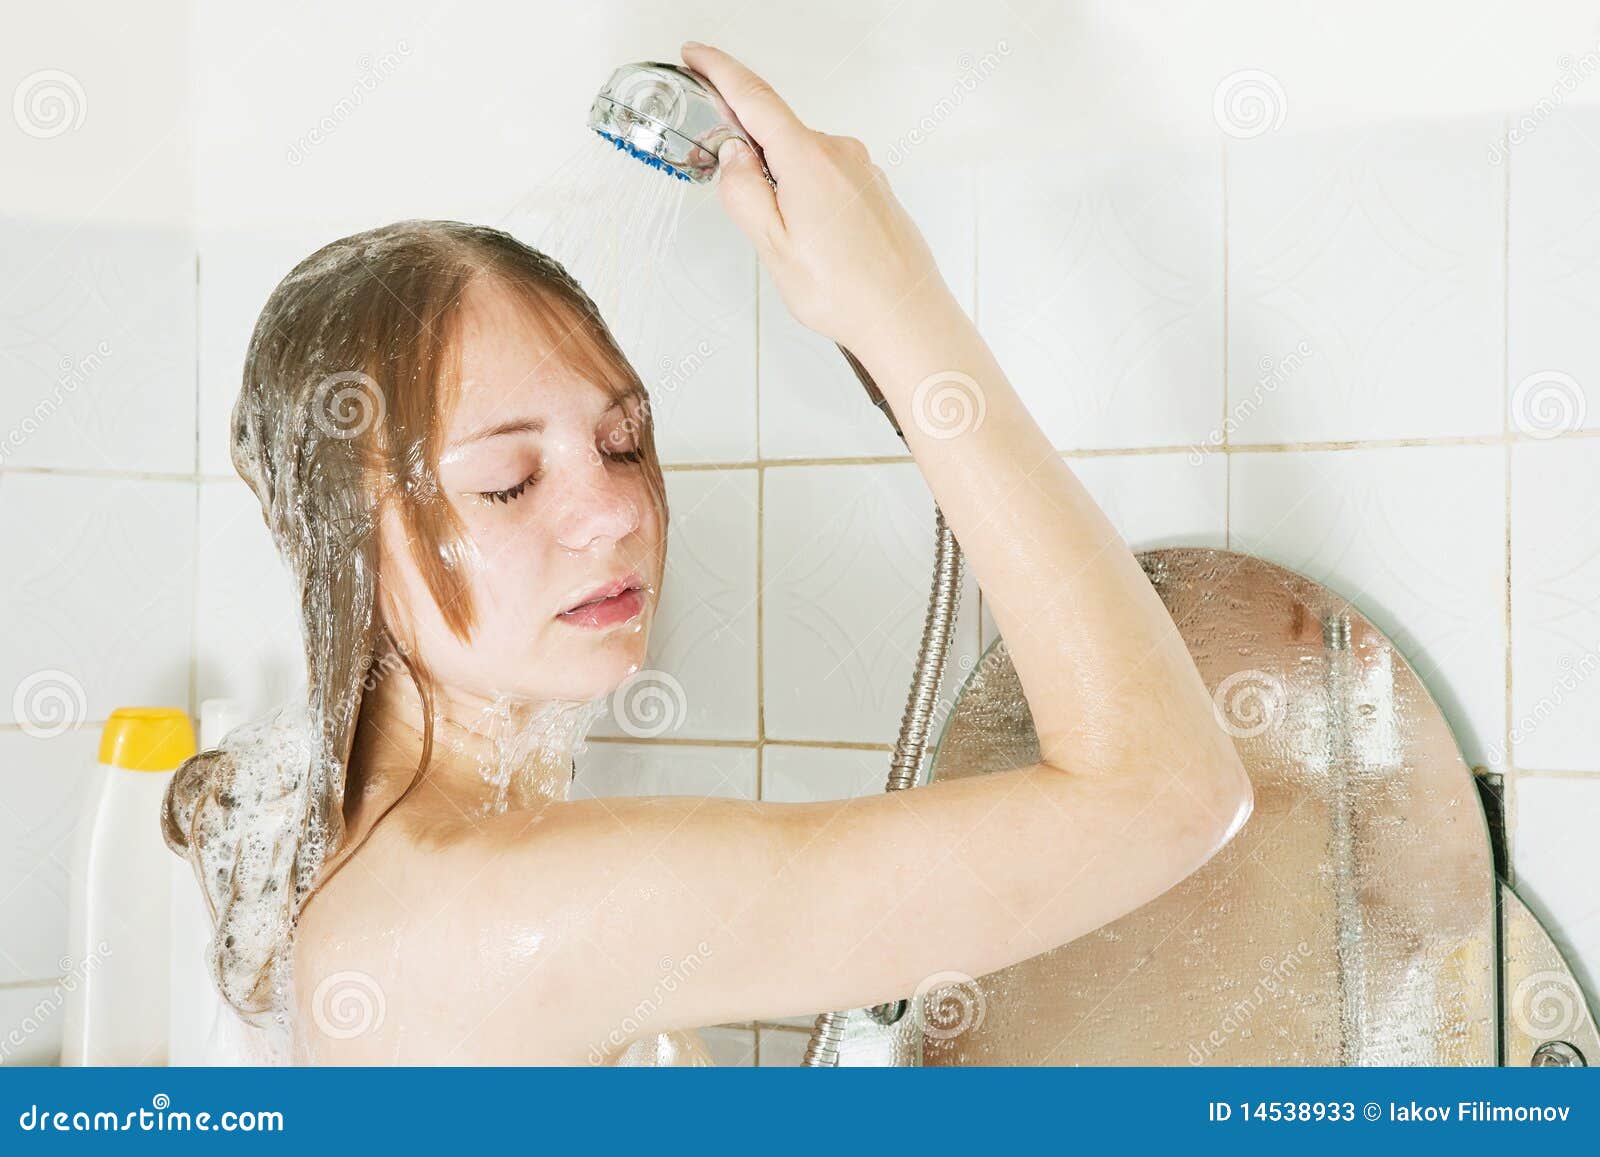 Мужа женой моются в душе. Девочка моется. Девочка моется в душе. Девушка-подросток в душе.